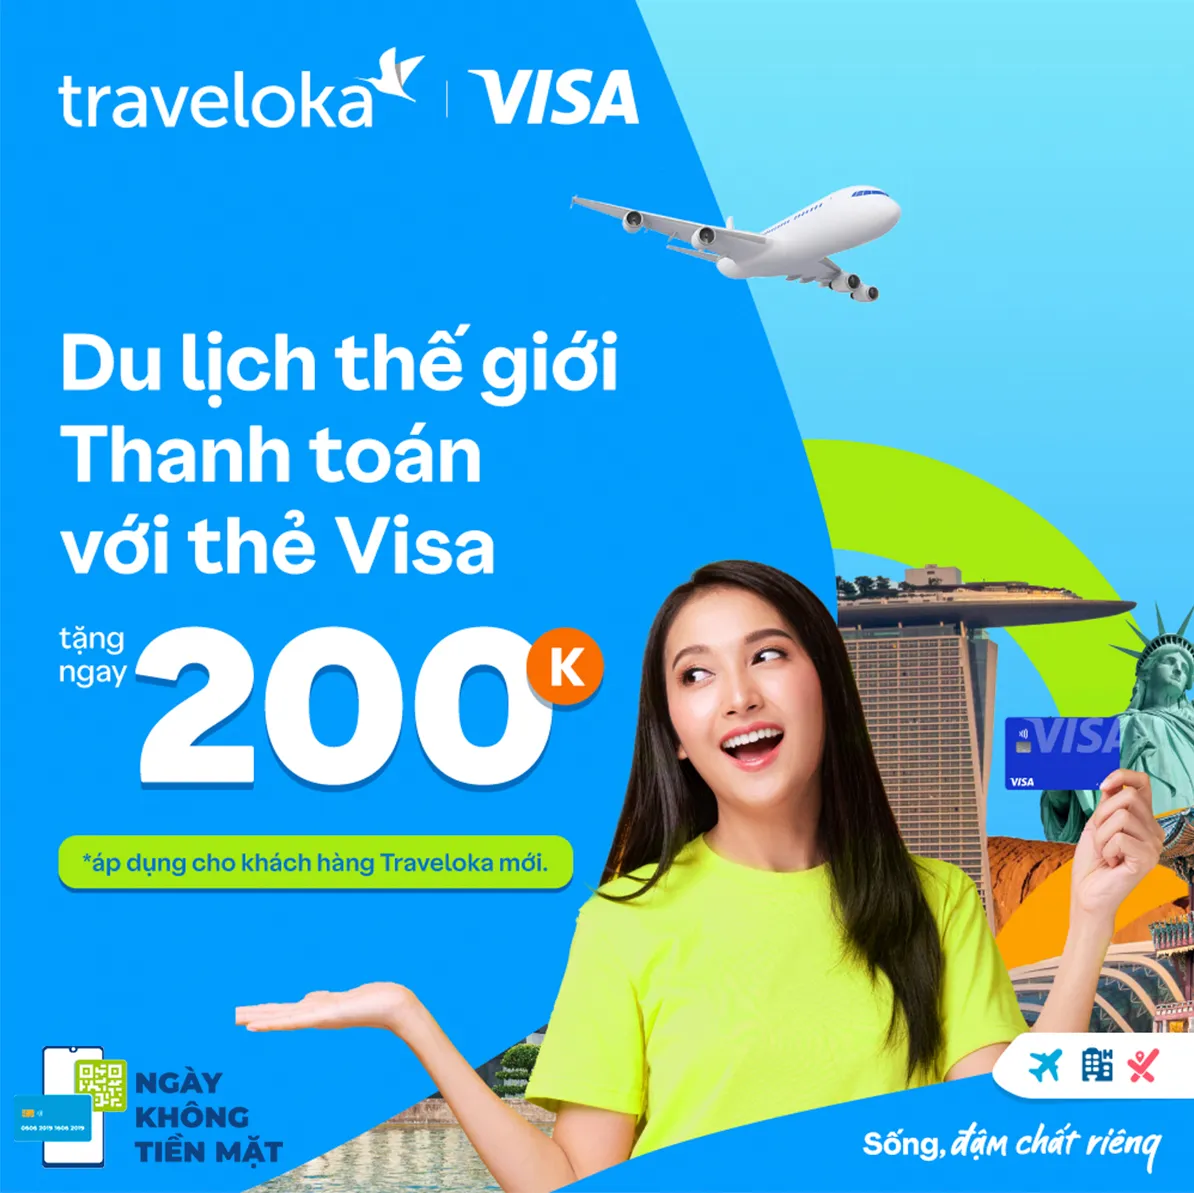 Visa đồng hành cùng chuỗi sự kiện “Ngày không tiền mặt” lần thứ 5, thúc đẩy chuyển đổi số tại Việt Nam